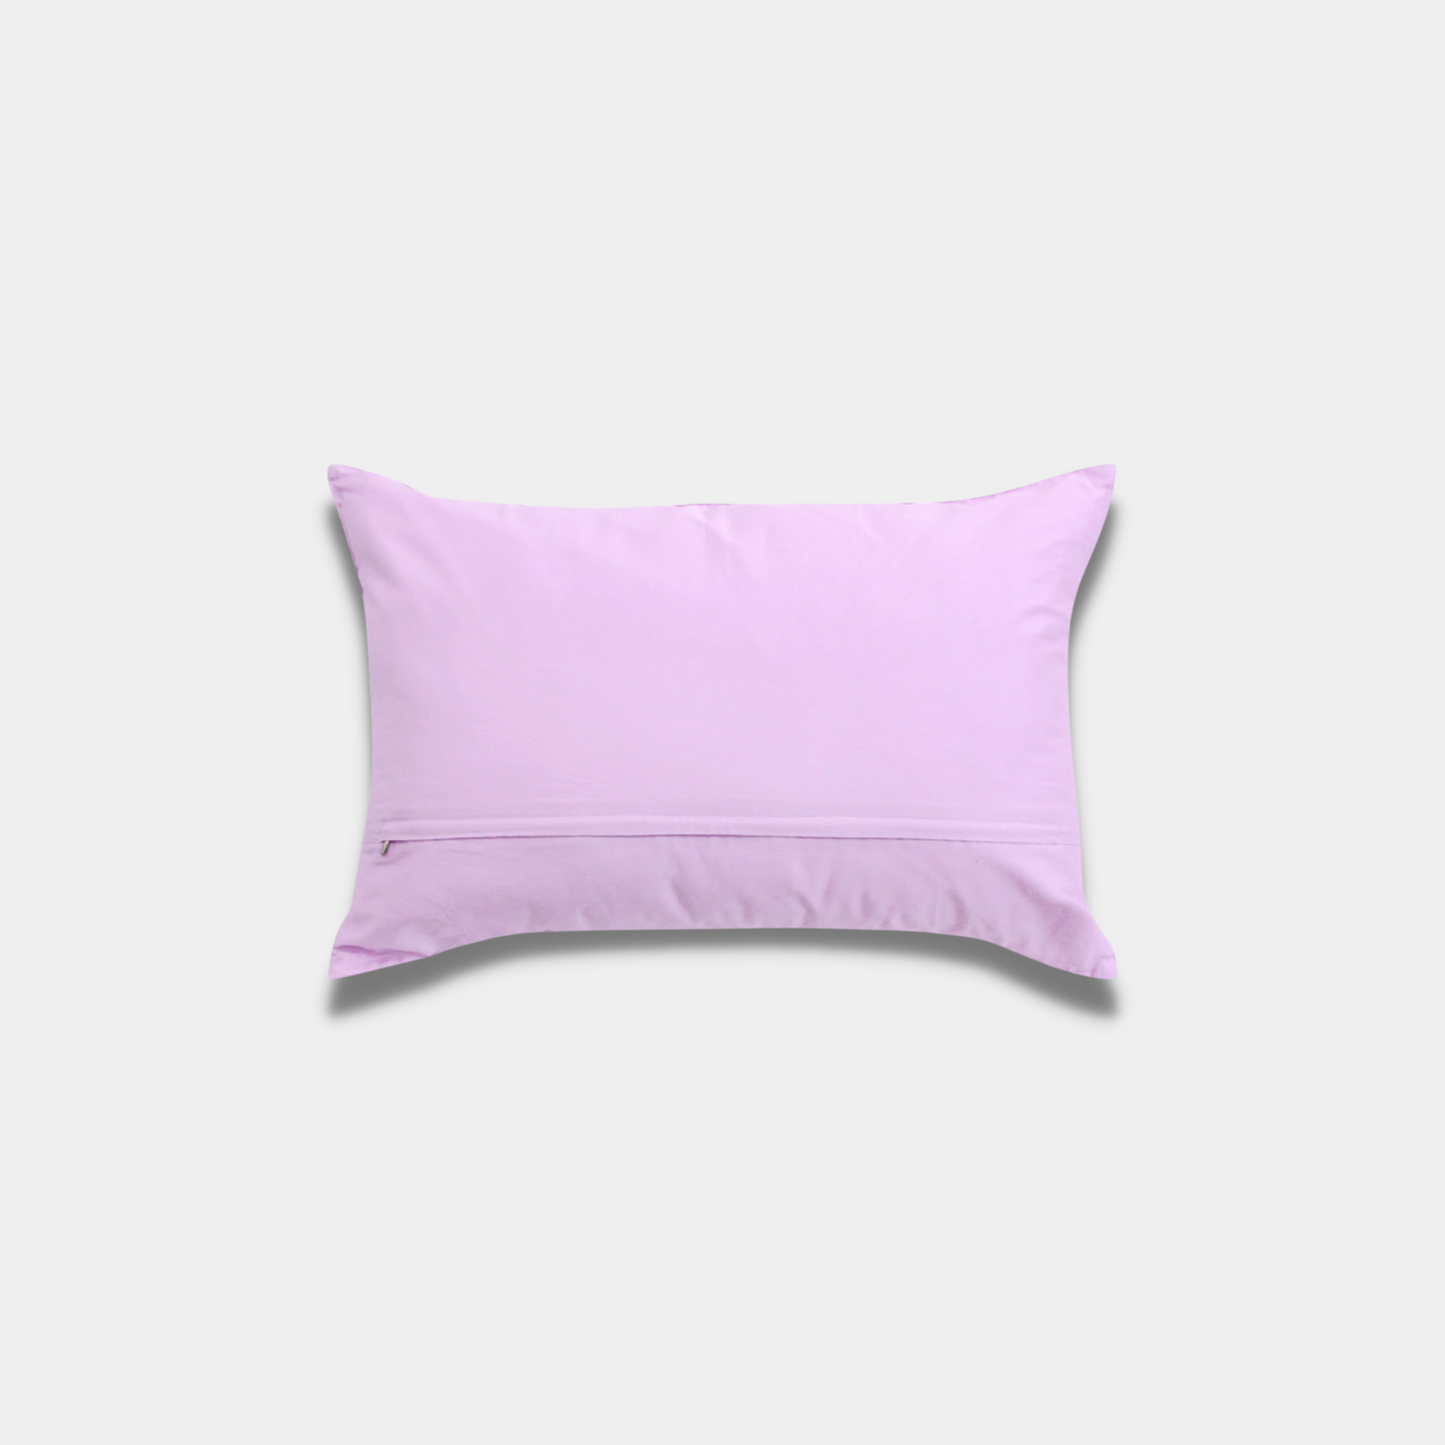 BT21 Pillow Cover [MANG]